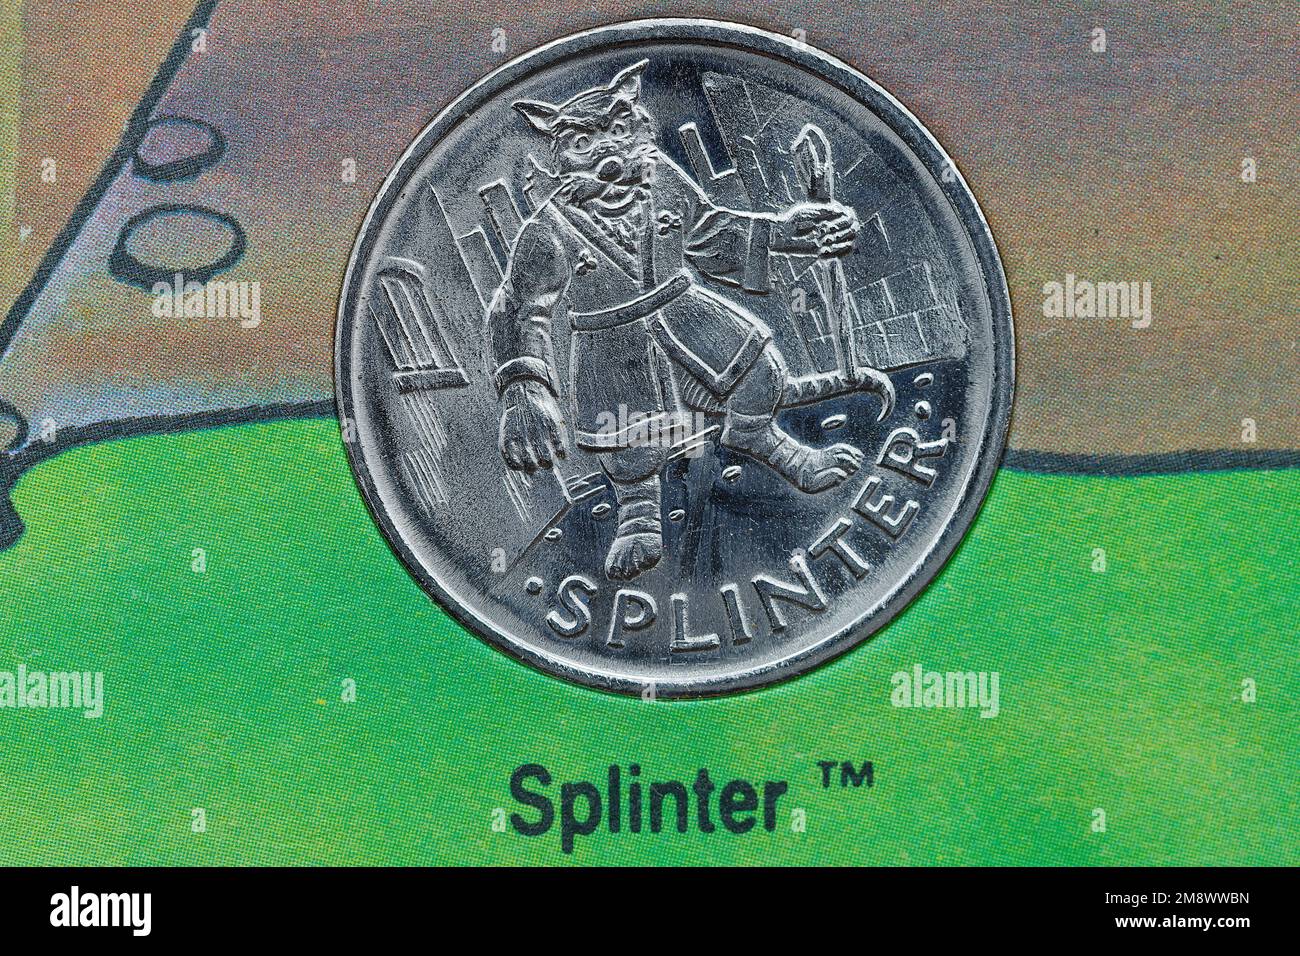 Master Splinter dalla collezione di medaglie Teenage Mutant Hero Turltes pubblicata nel 1990. Parte di un set di 15 medaglie. Foto Stock